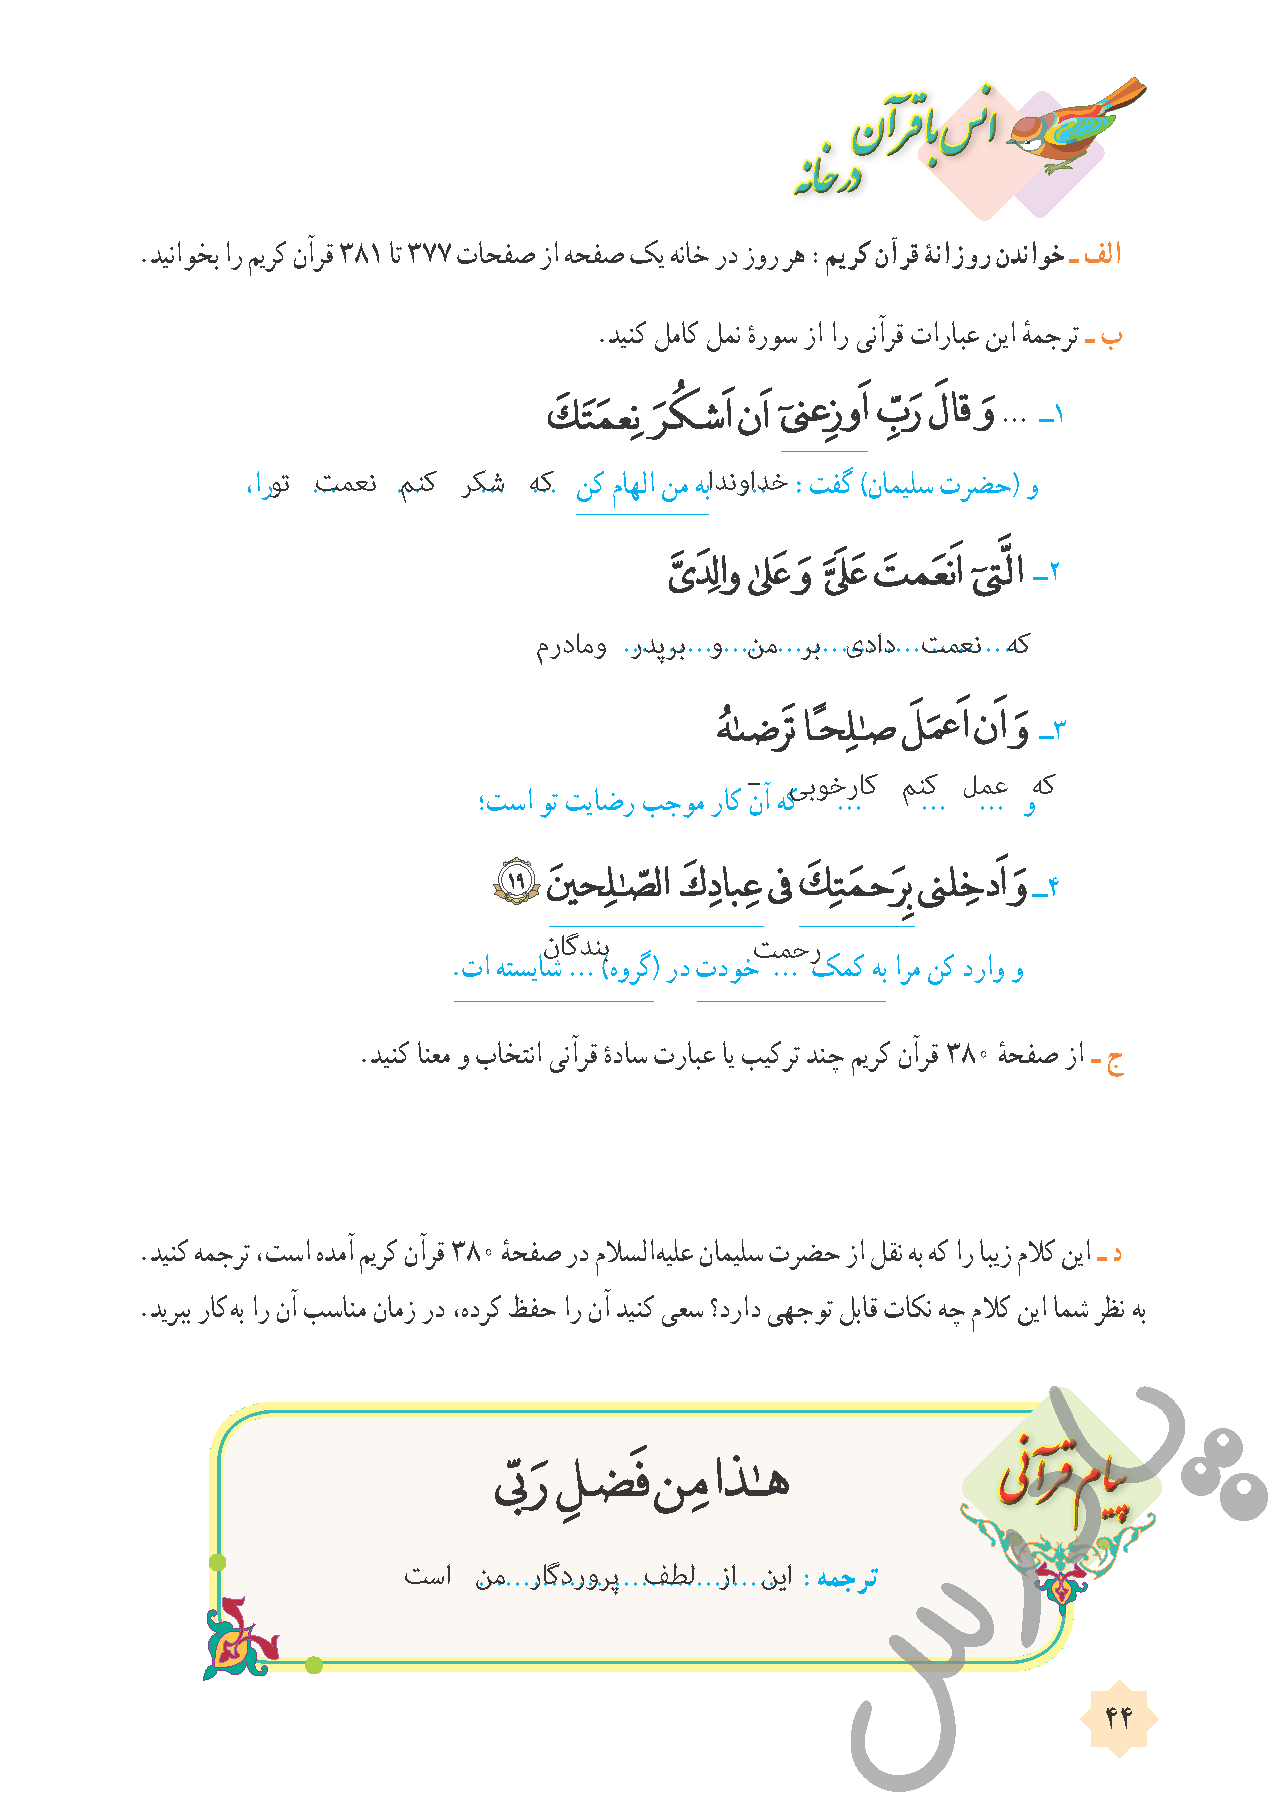 پاسخ درس 4 قرآن هشتم  صفحه 2